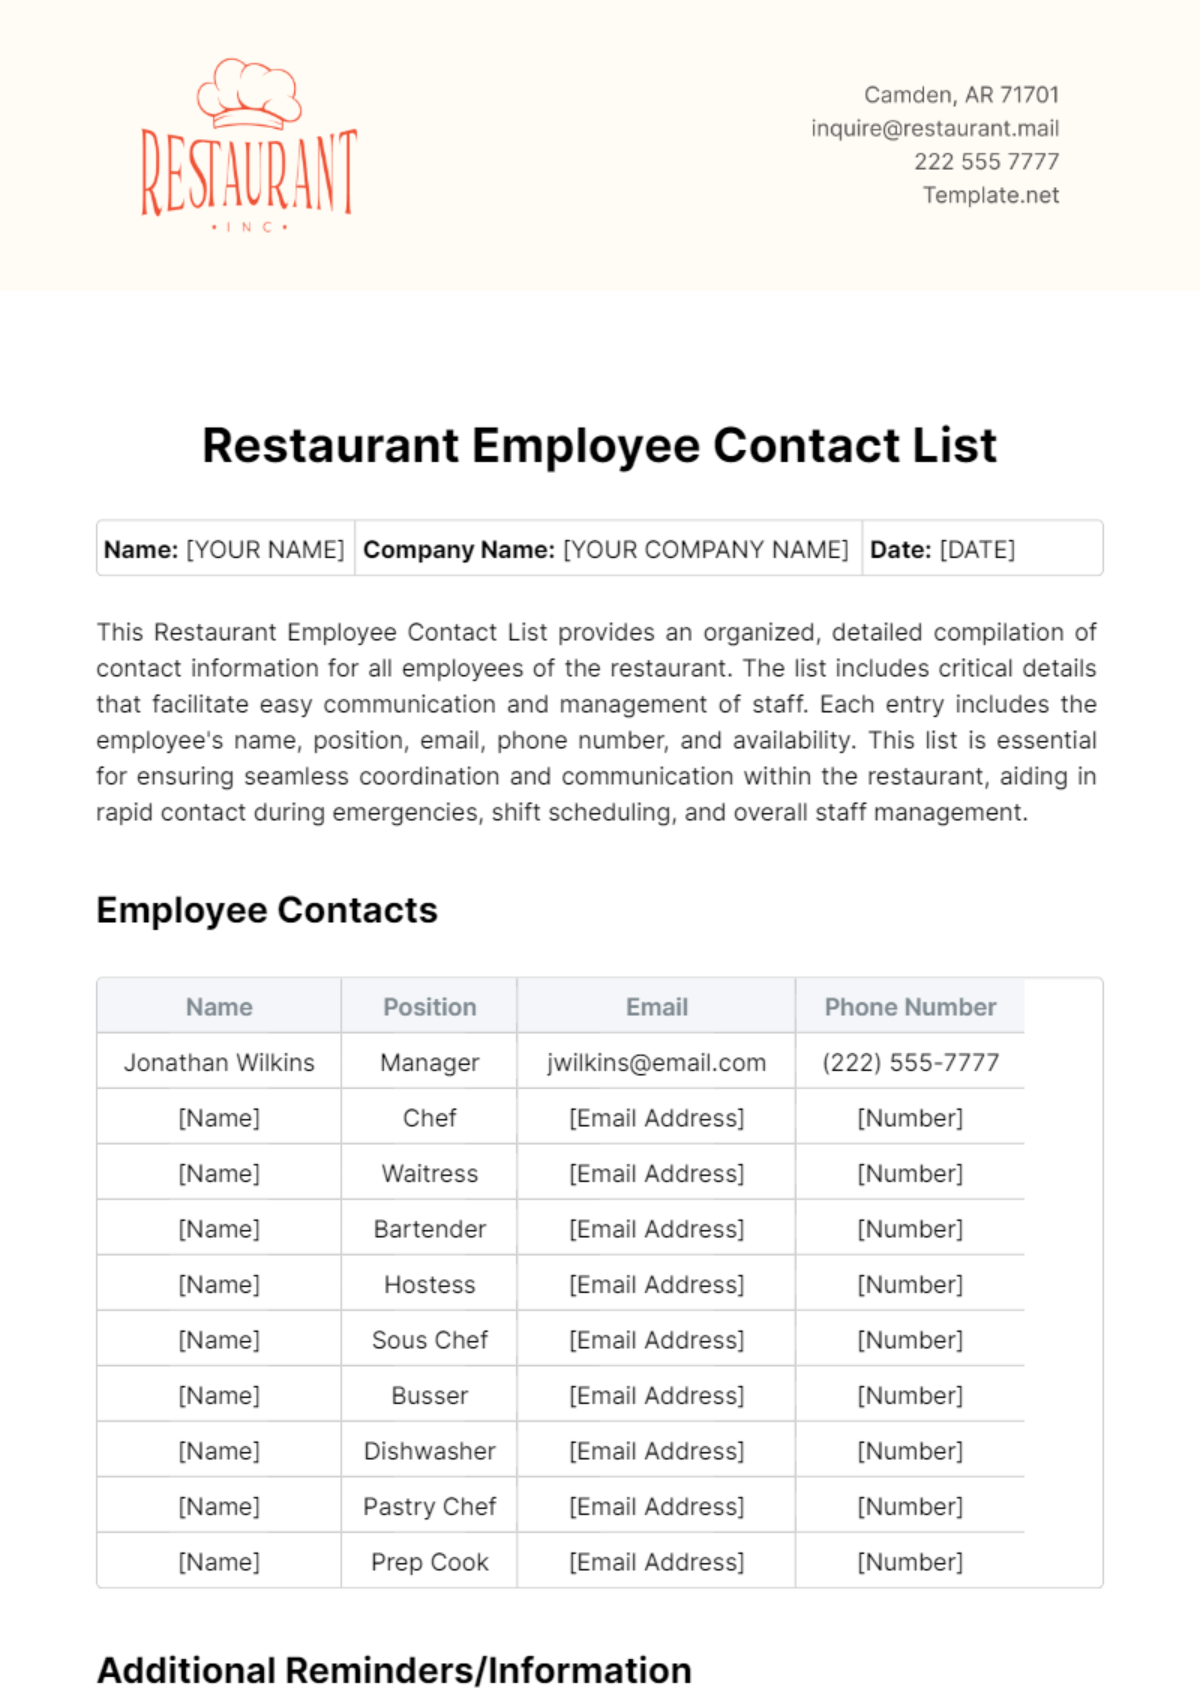 Restaurant Employee Contact List Template